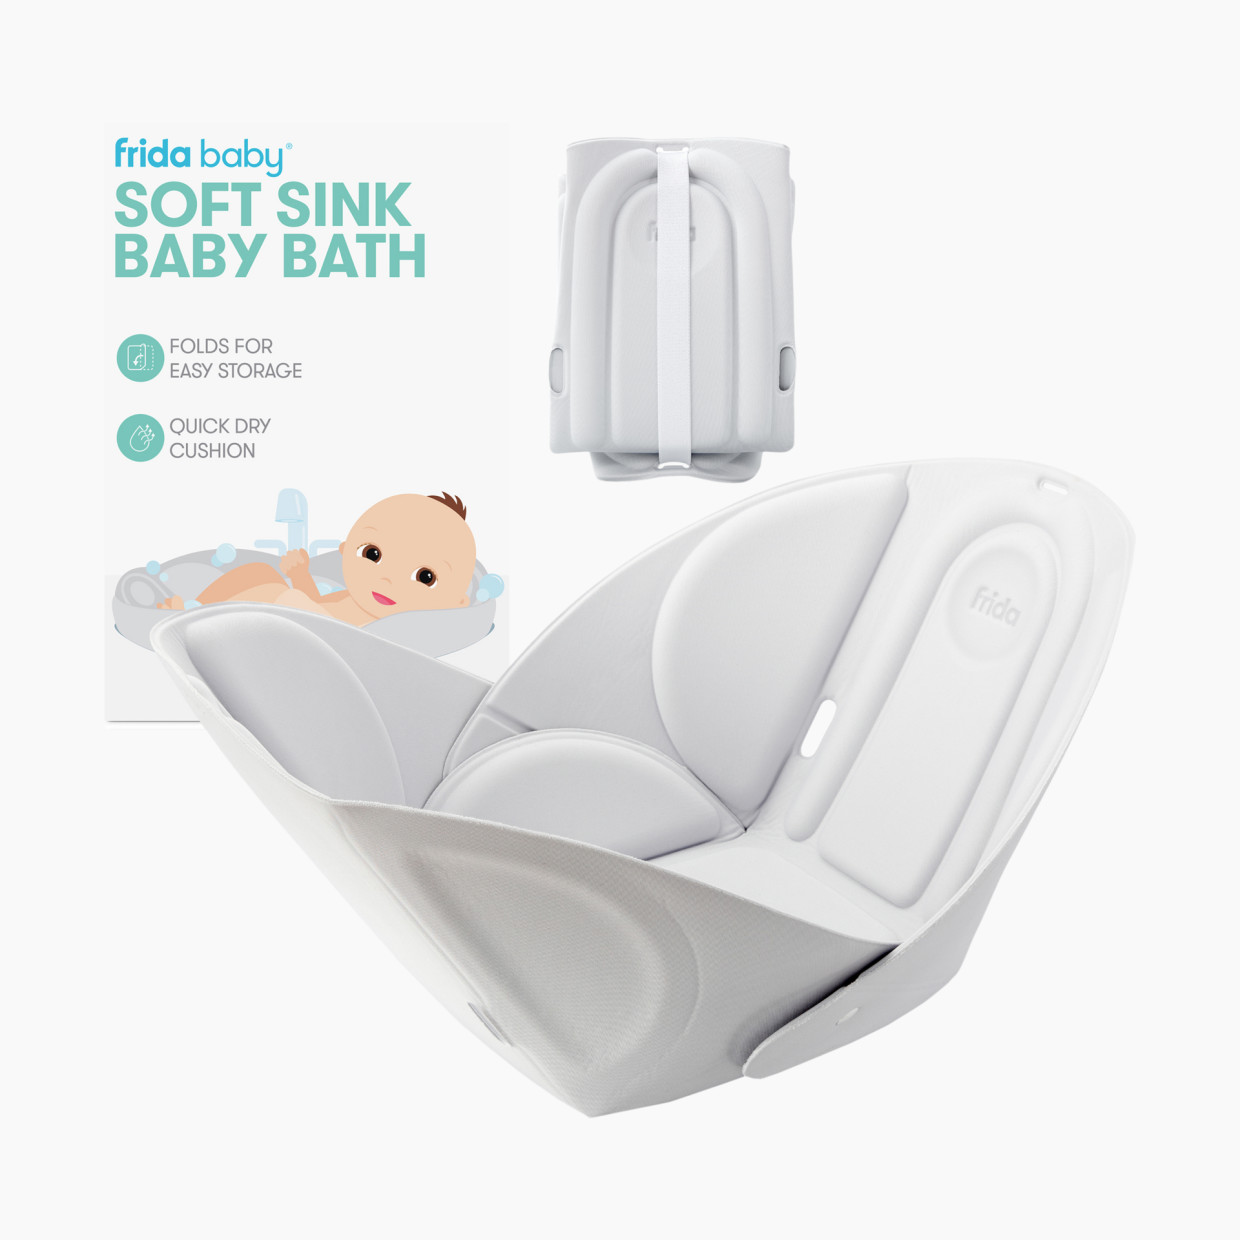 FridaBaby Soft Sink Baby Bath.